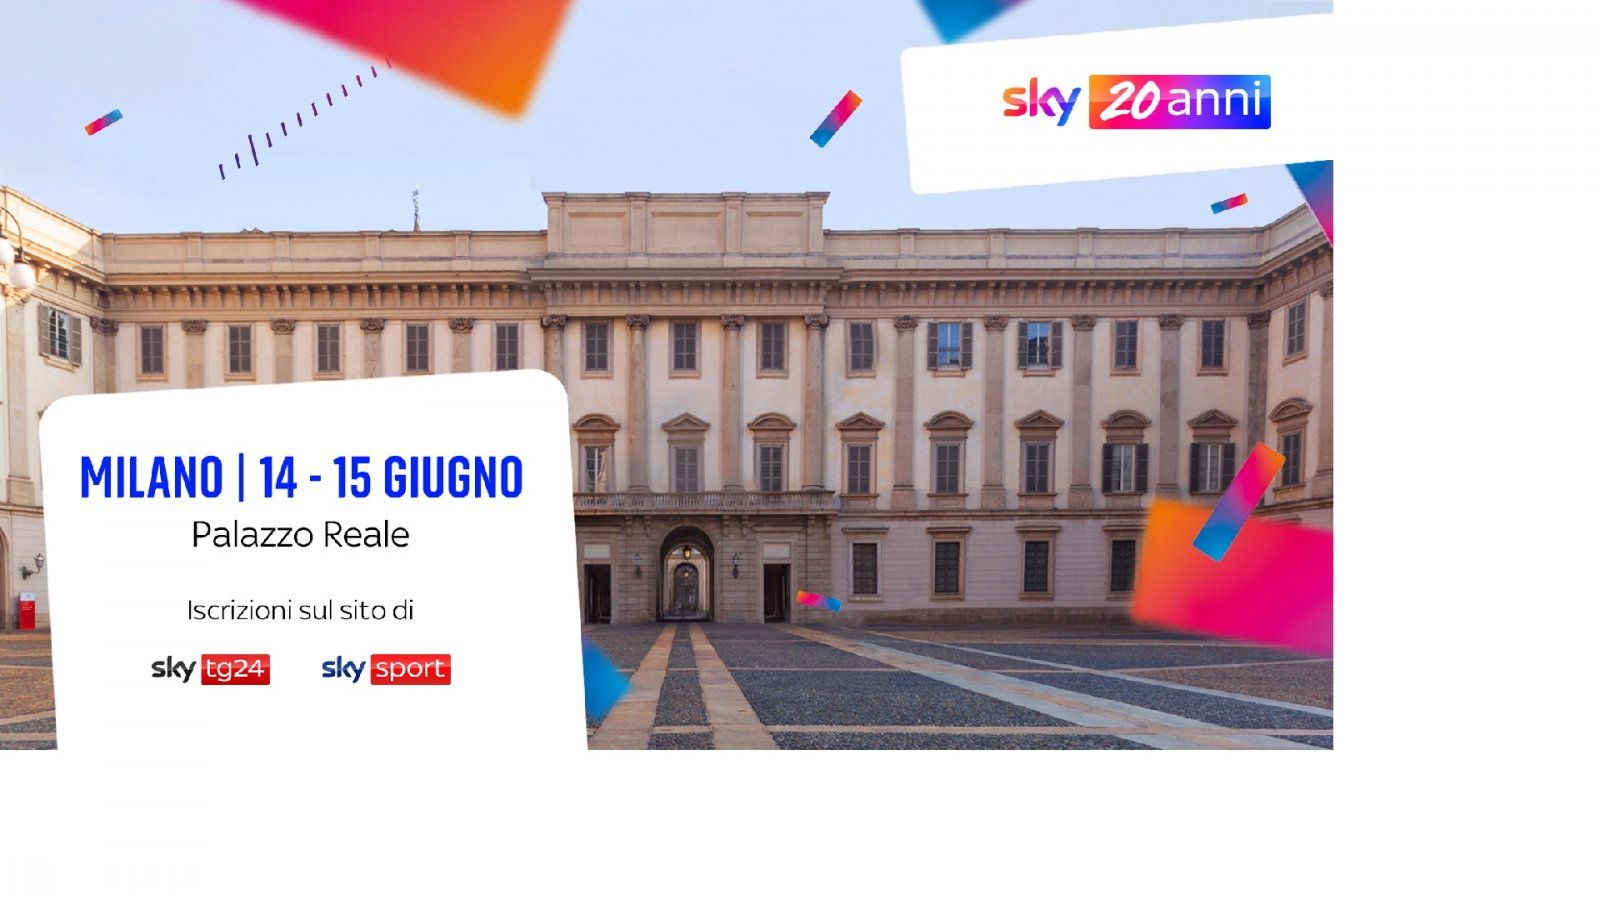 Sky compie 20 anni: rivelati gli ospiti del grande evento di Milano